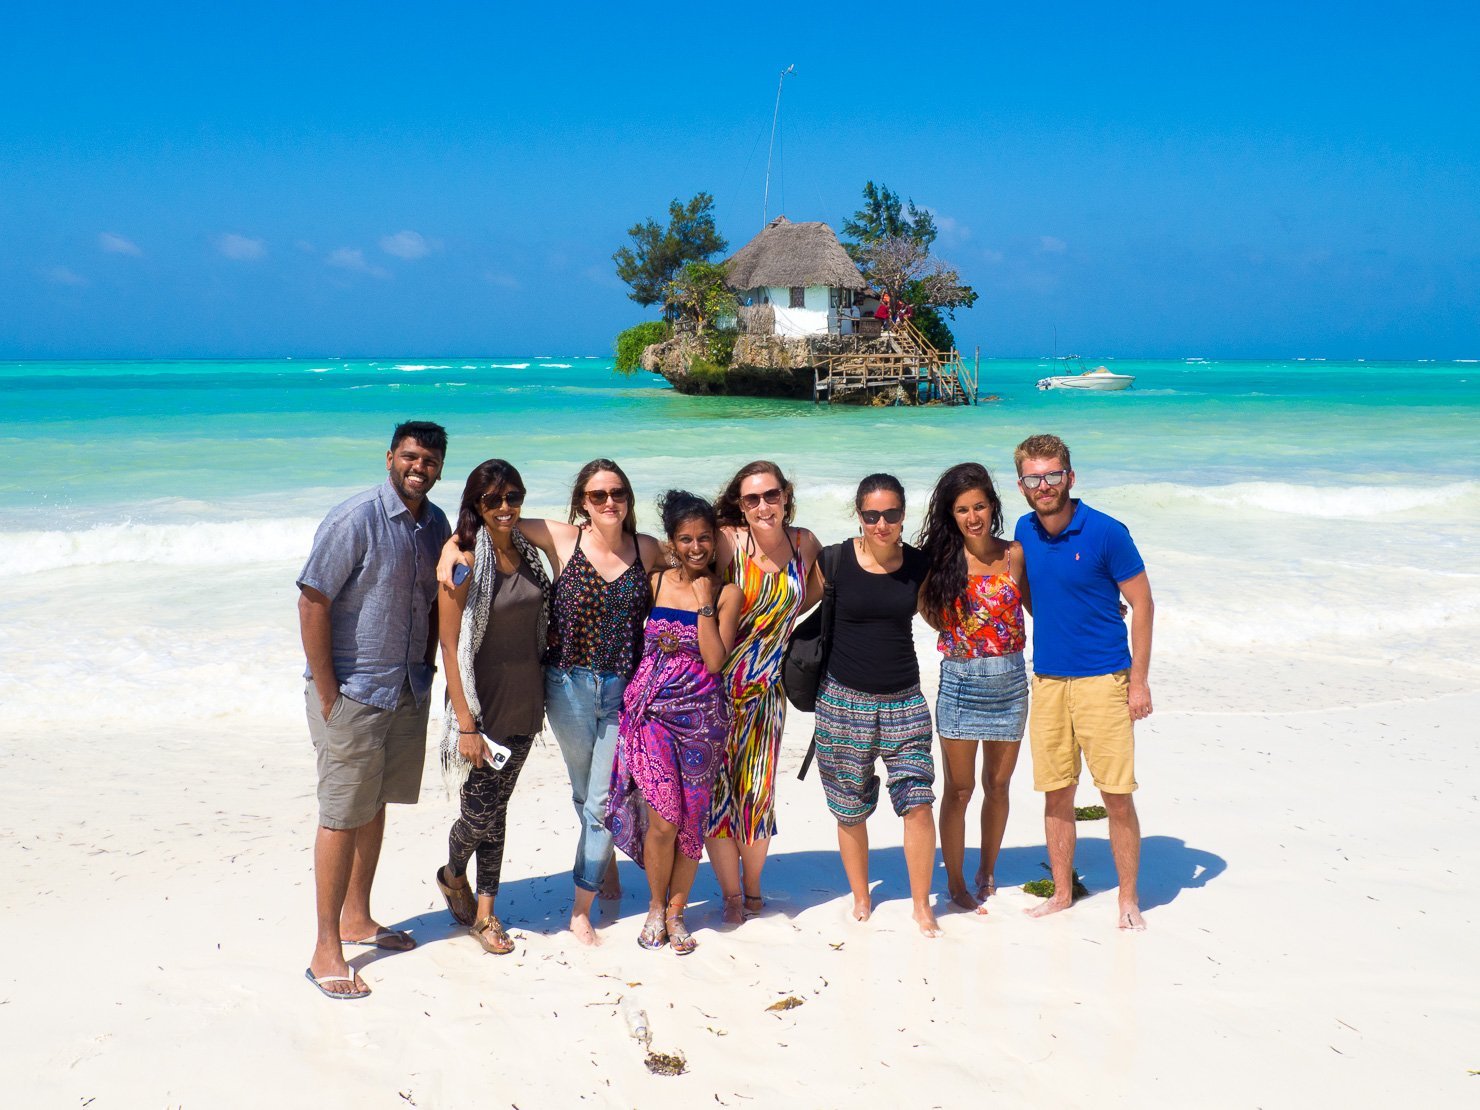 Plajele din Zanzibar sunt căutate de turiștii din lumea întreagă. Sursa foto: heleninwonderlust.co.uk